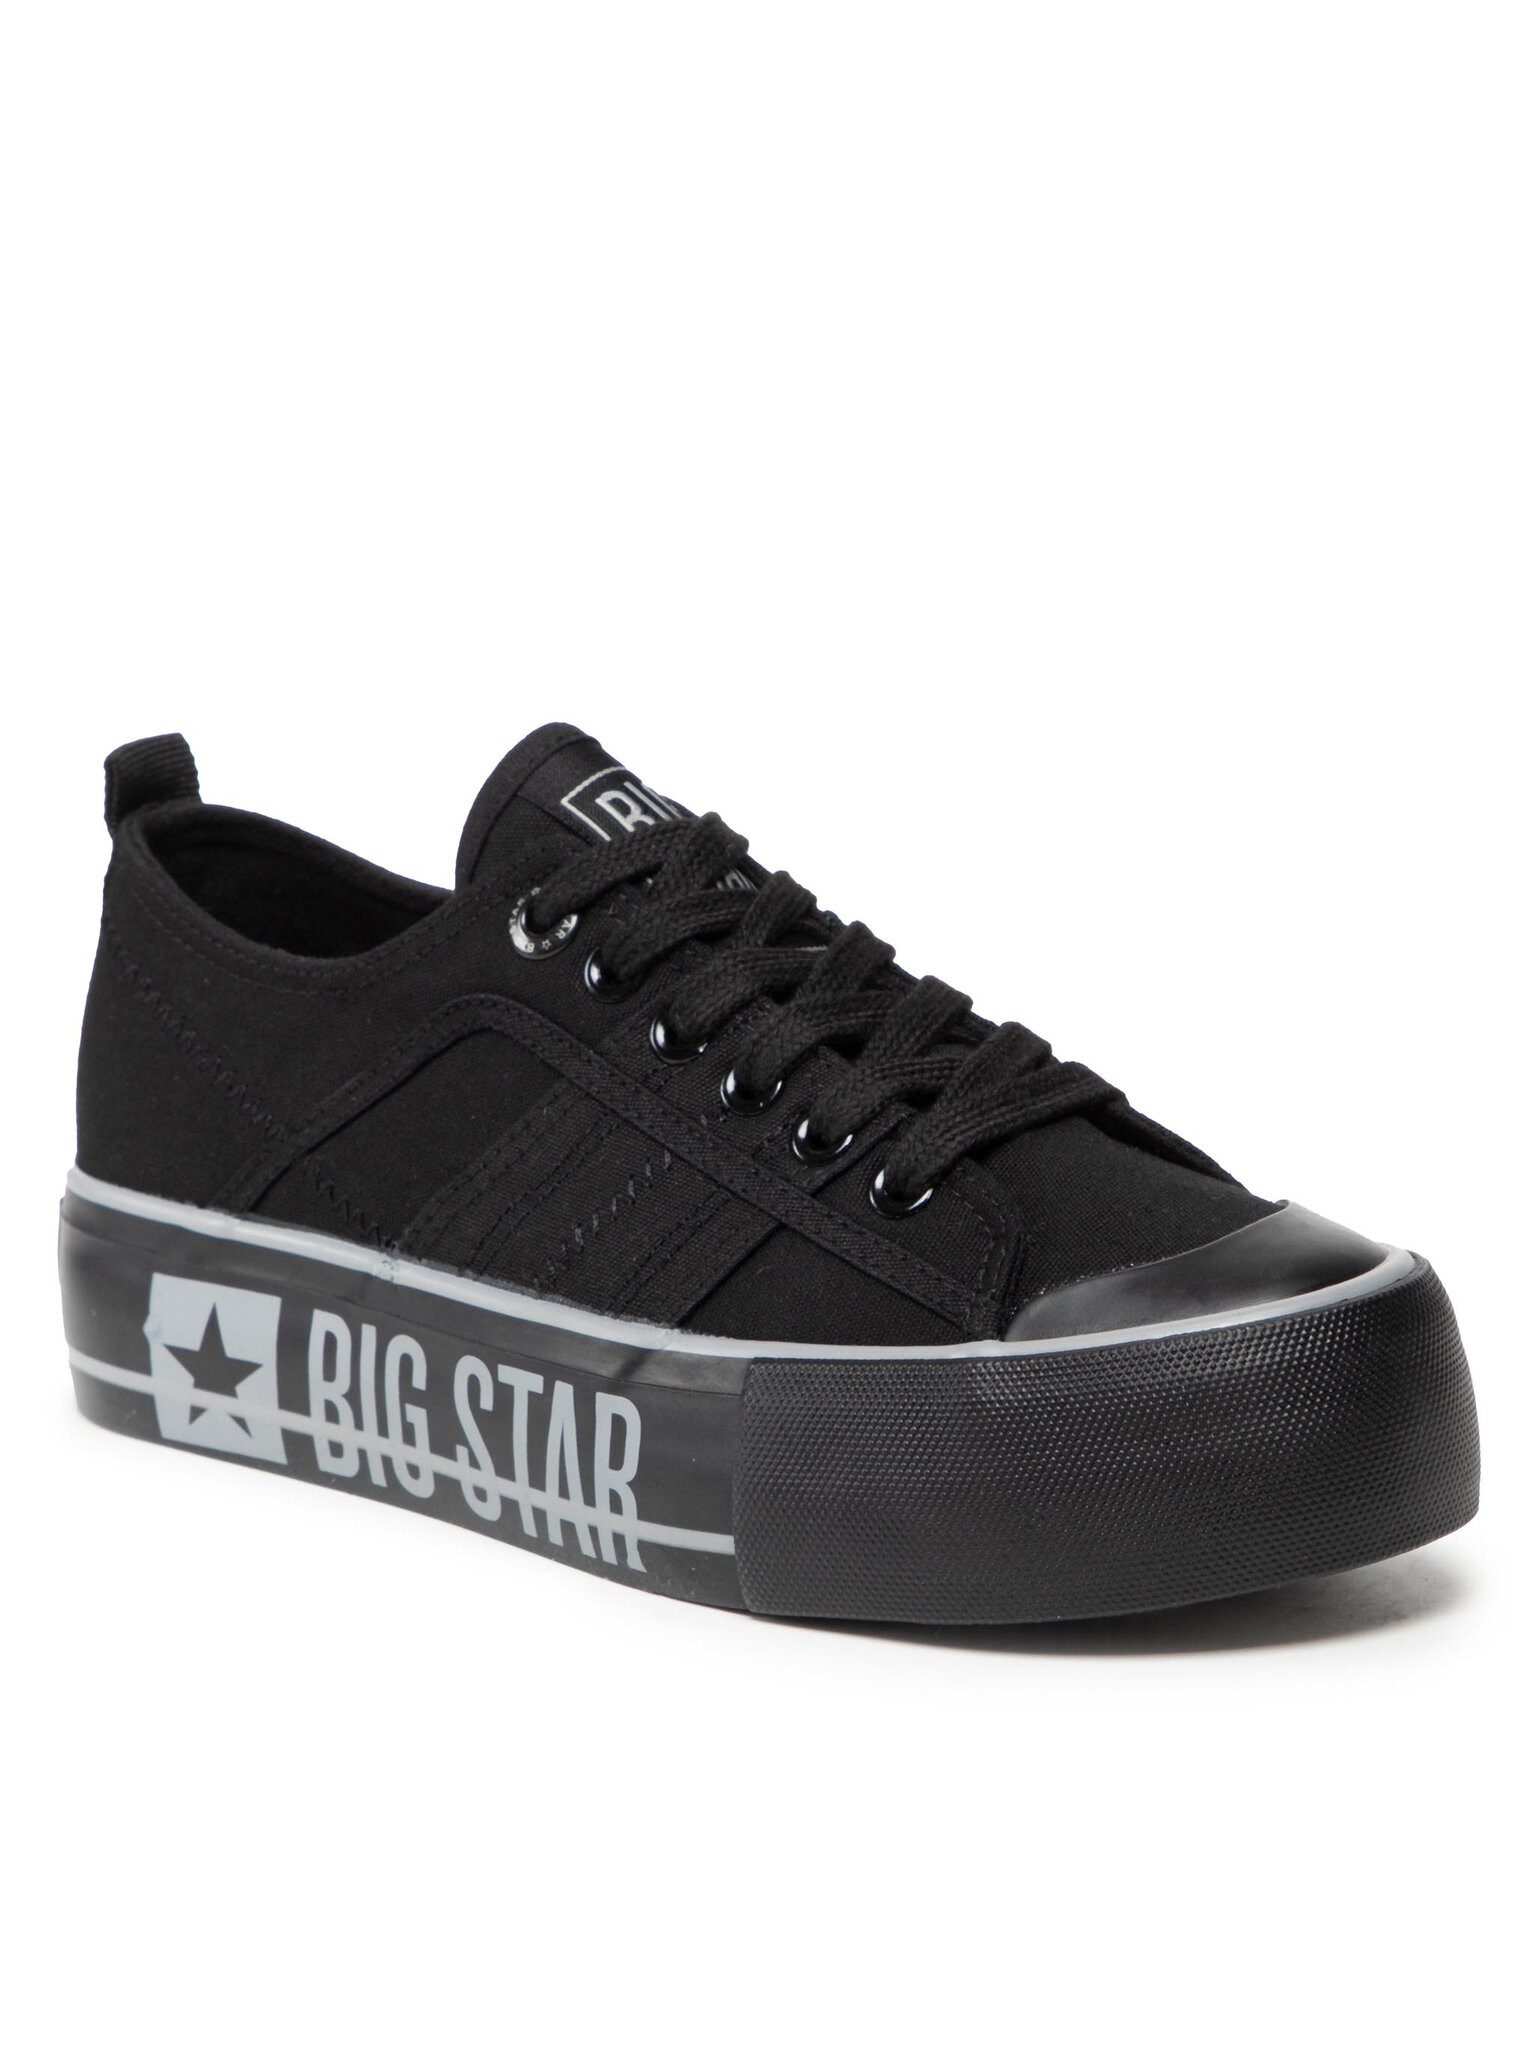 BIG STAR Sneakers aus Stoff JJ274053 Black Sneaker